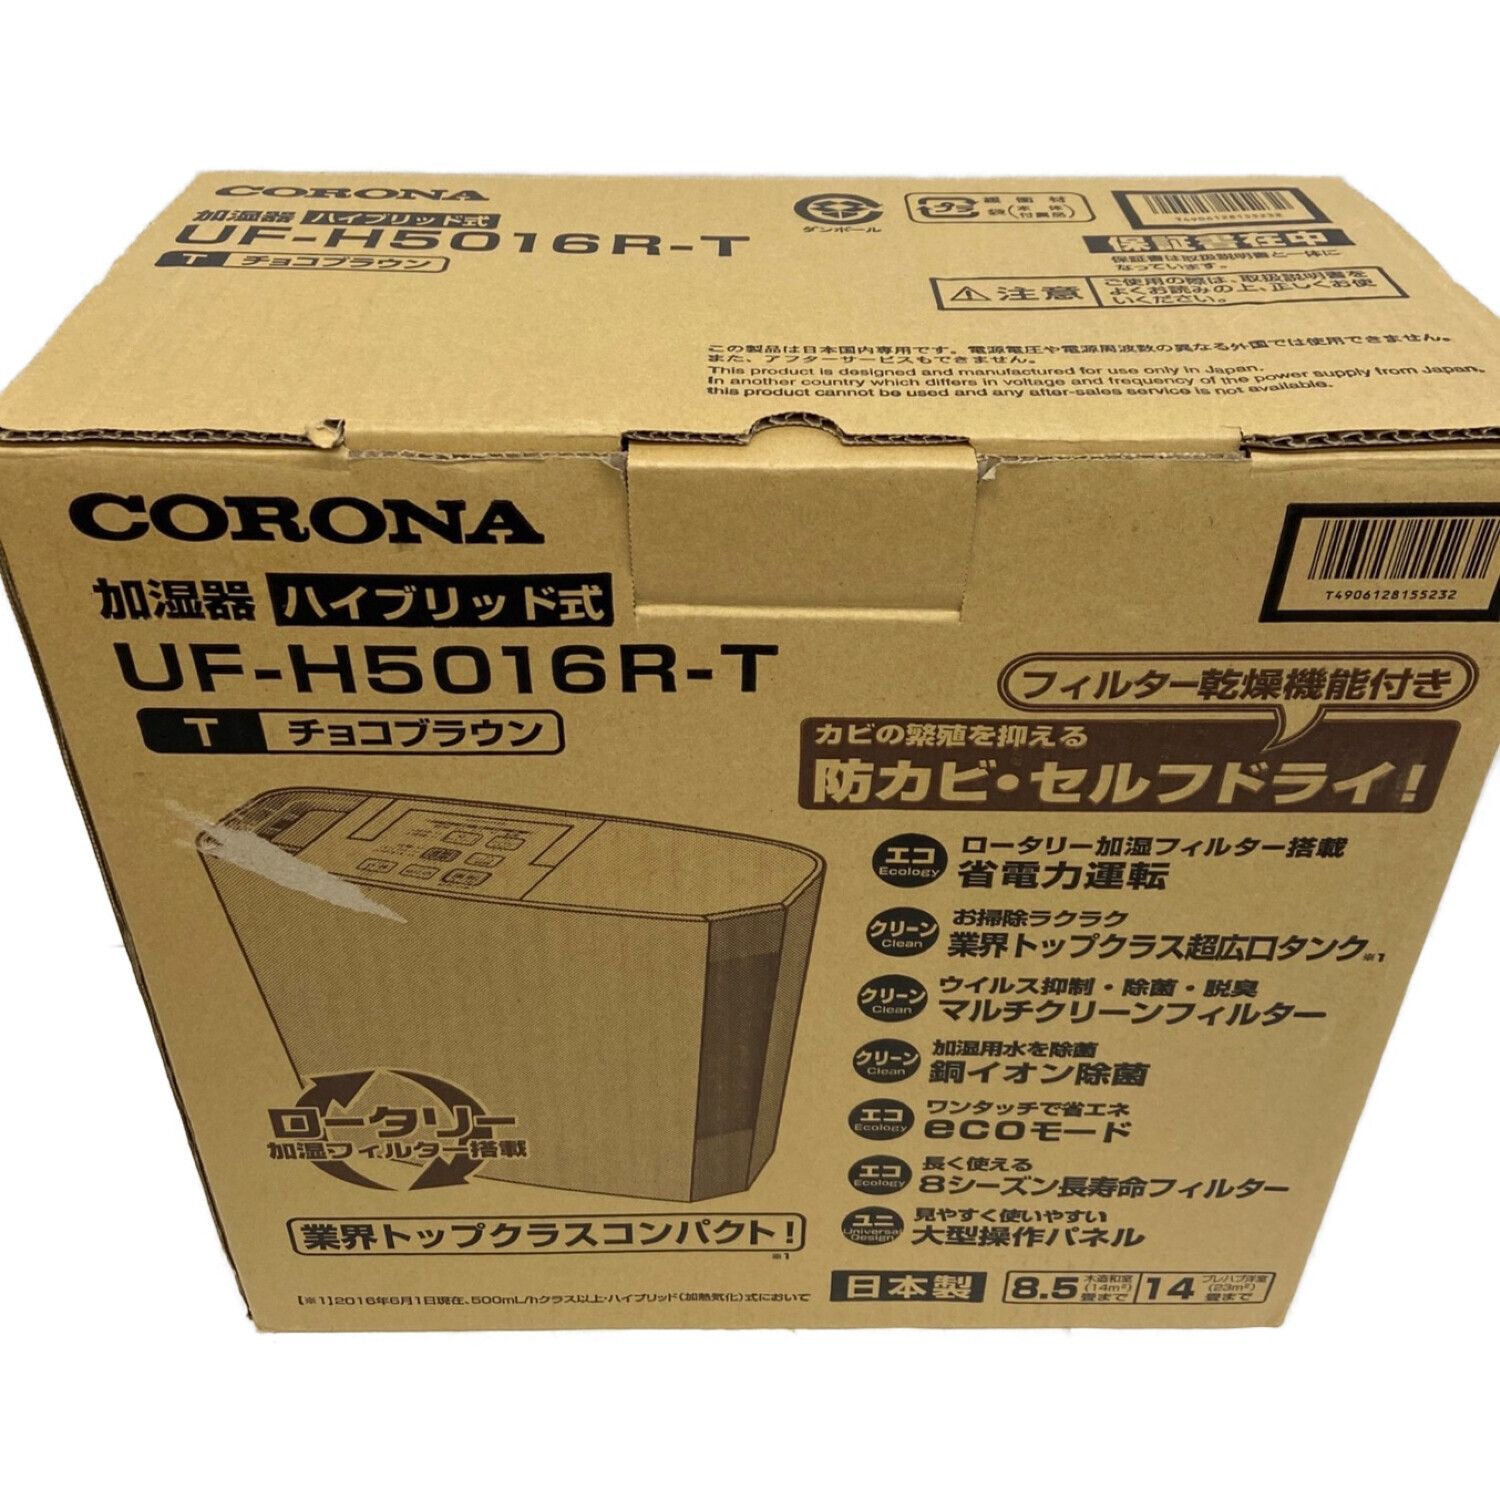 CORONA (コロナ) ハイブリッド式加湿器 UF-H5016R-T 2016年製 程度S(未 ...